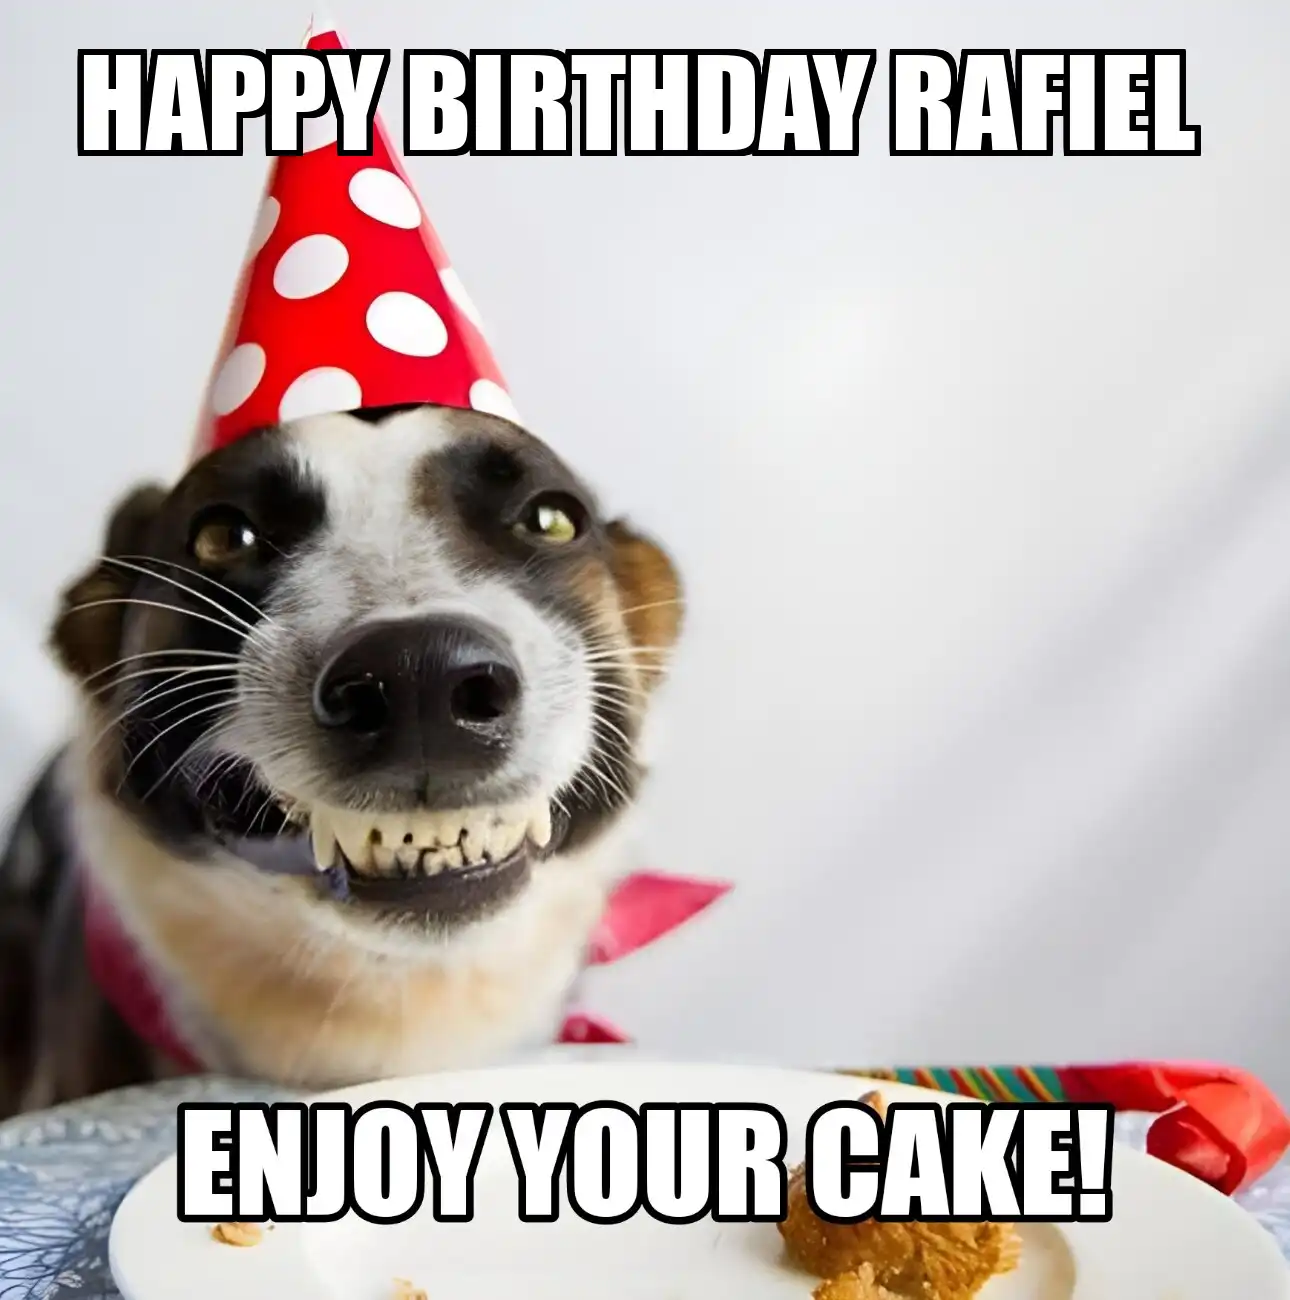 Happy Birthday Rafiel Enjoy Your Cake Dog Meme